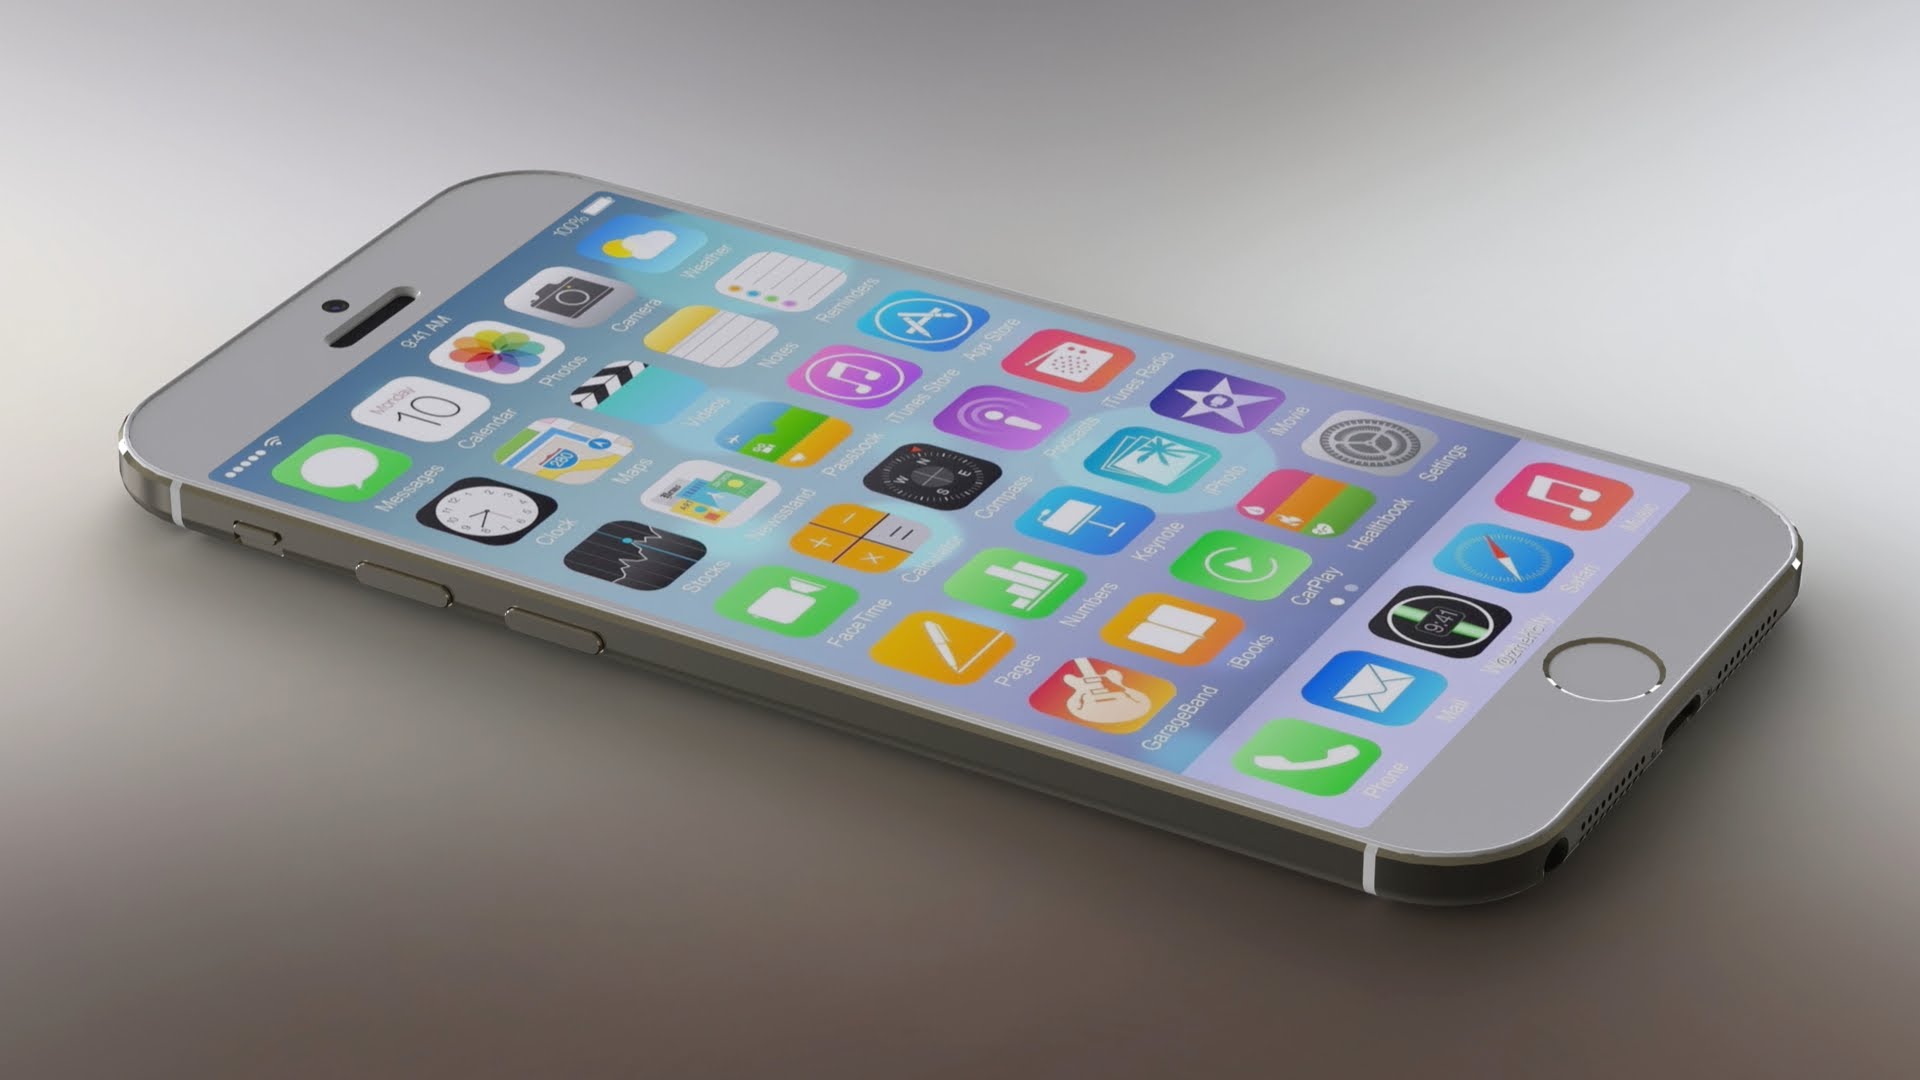 苹果CEO库克暗示:iPhone 7将有重大创新 - 科技资讯 - 温氺资讯网